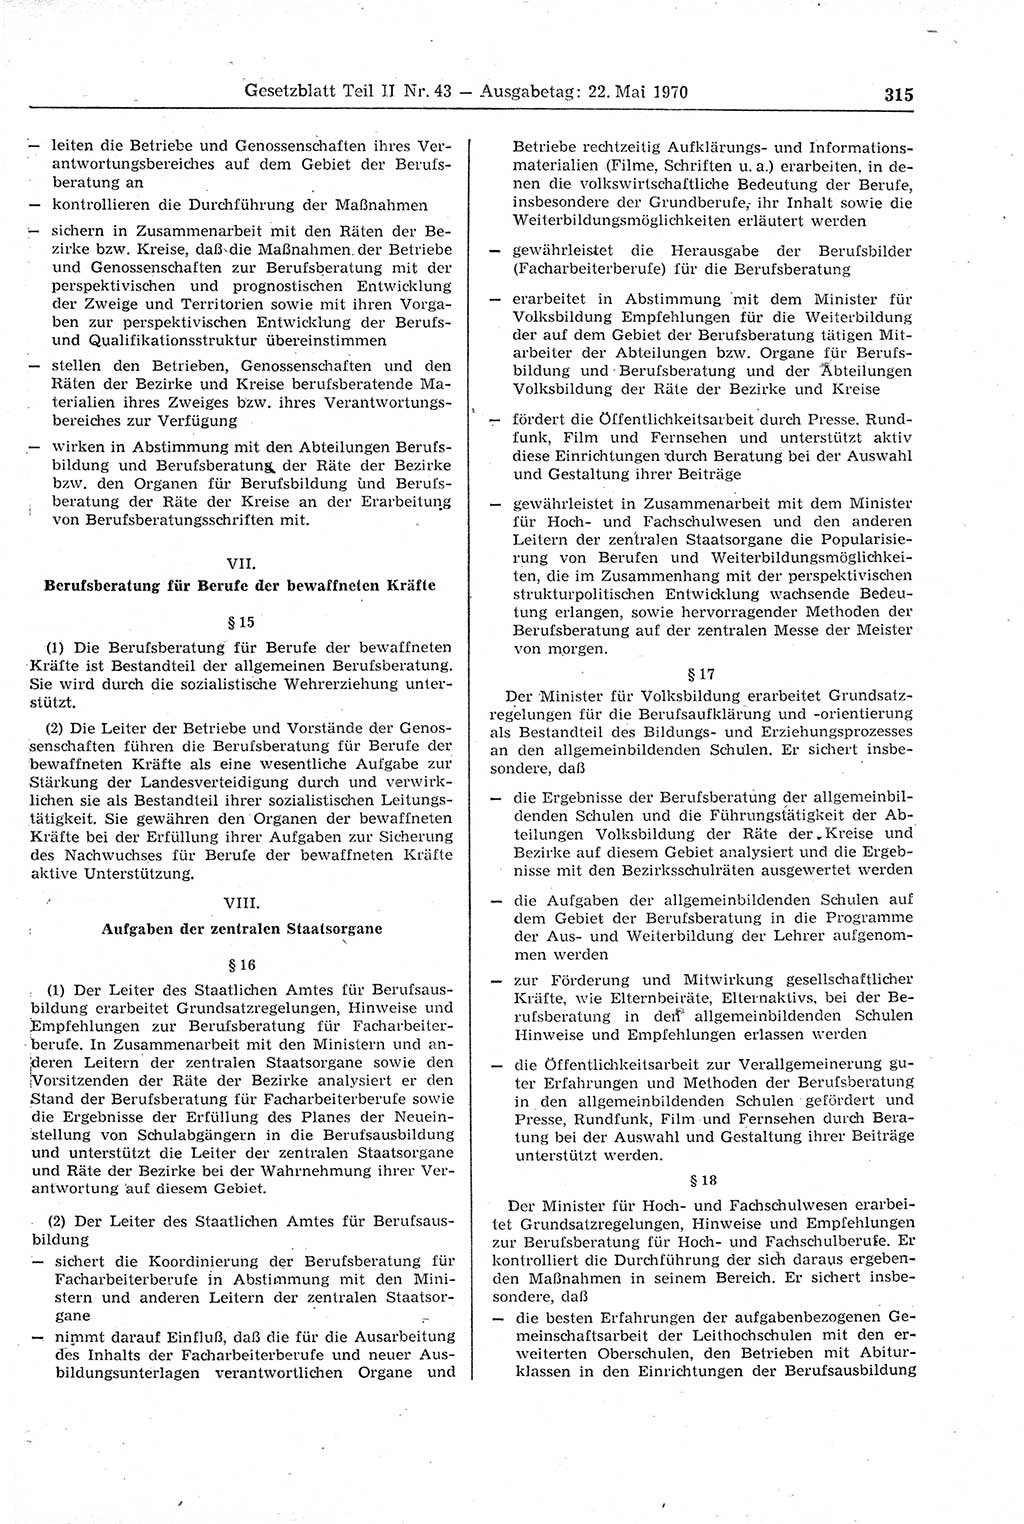 Gesetzblatt (GBl.) der Deutschen Demokratischen Republik (DDR) Teil ⅠⅠ 1970, Seite 315 (GBl. DDR ⅠⅠ 1970, S. 315)